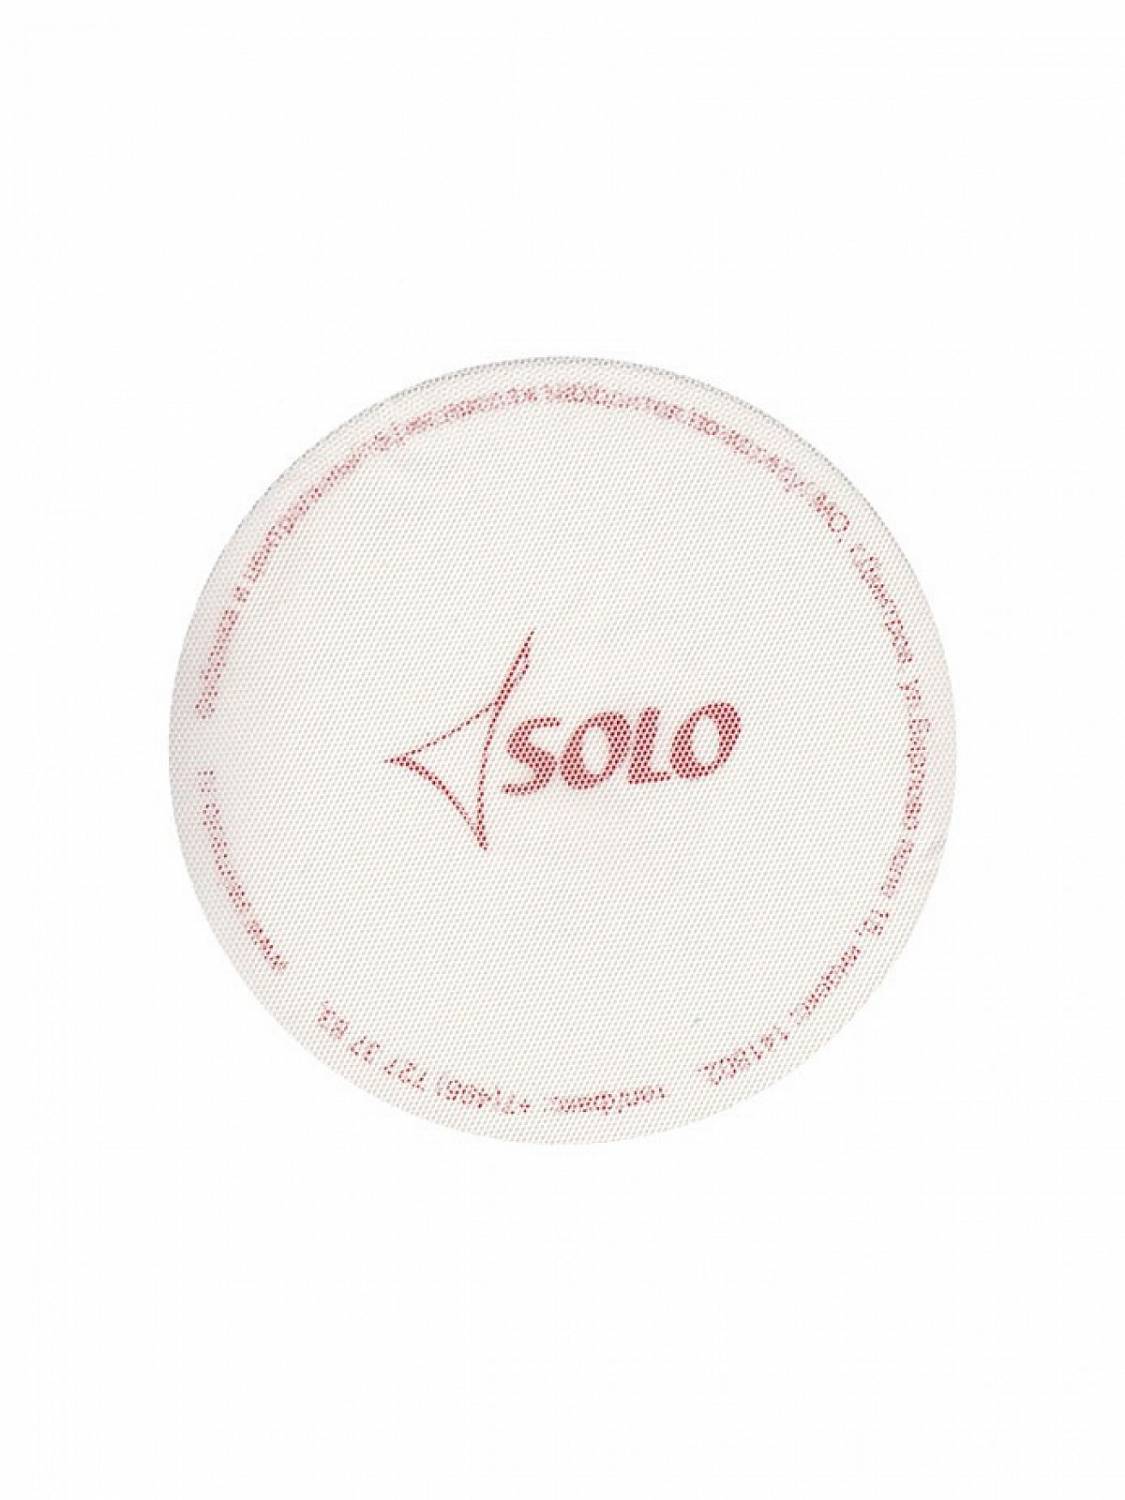 Сеточка на пучок SOLO SA1 (белая, размер М)